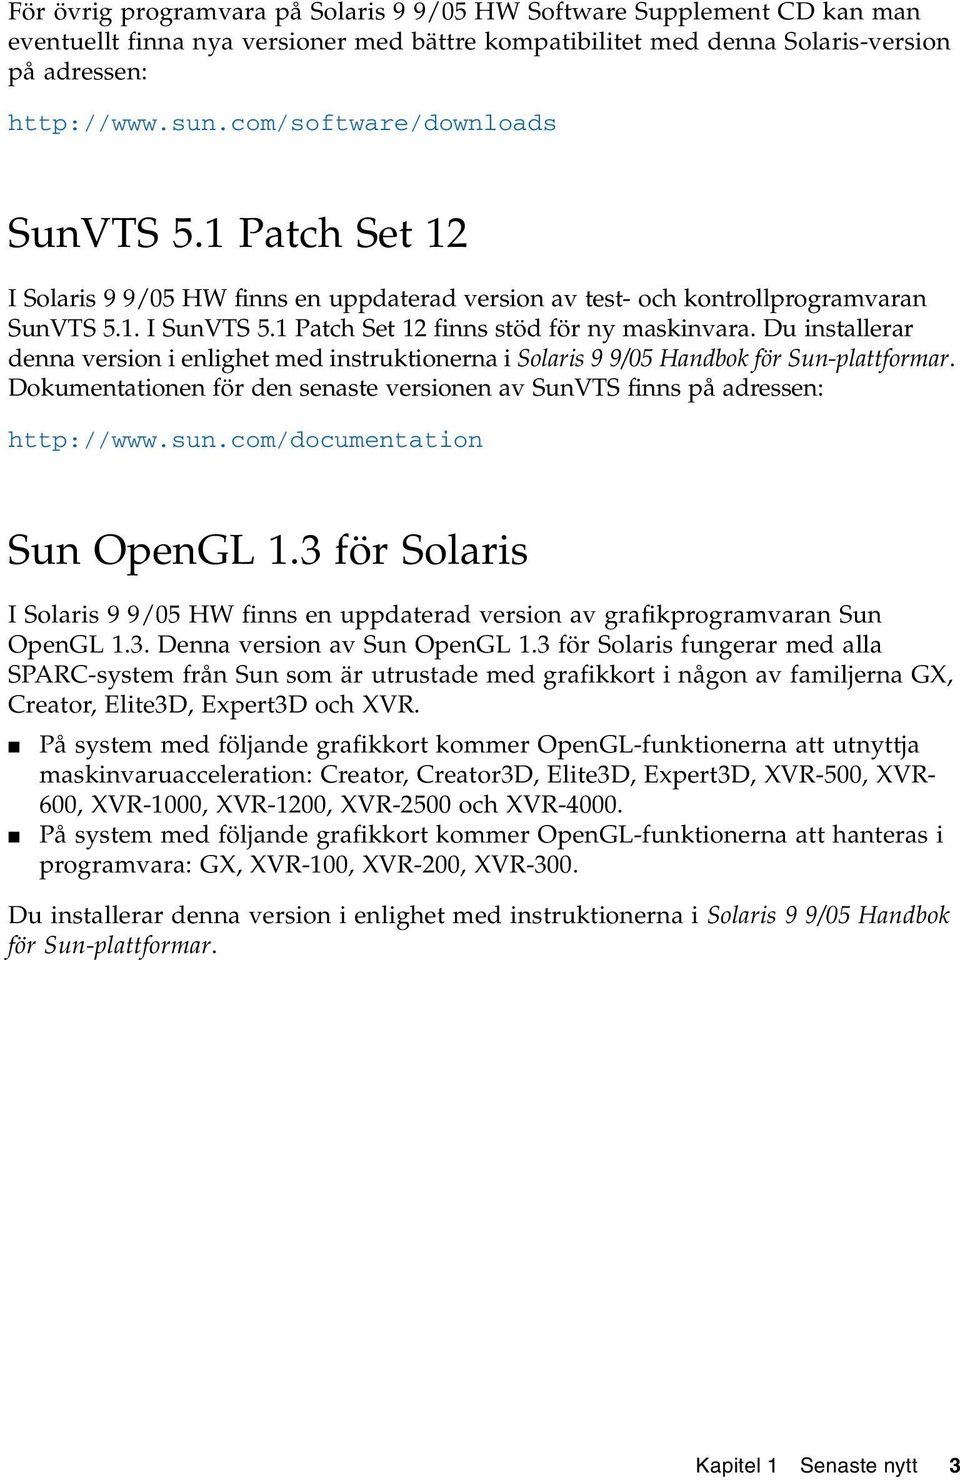 Du installerar denna version i enlighet med instruktionerna i Solaris 9 9/05 Handbok för Sun-plattformar. Dokumentationen för den senaste versionen av SunVTS finns på adressen: http://www.sun.